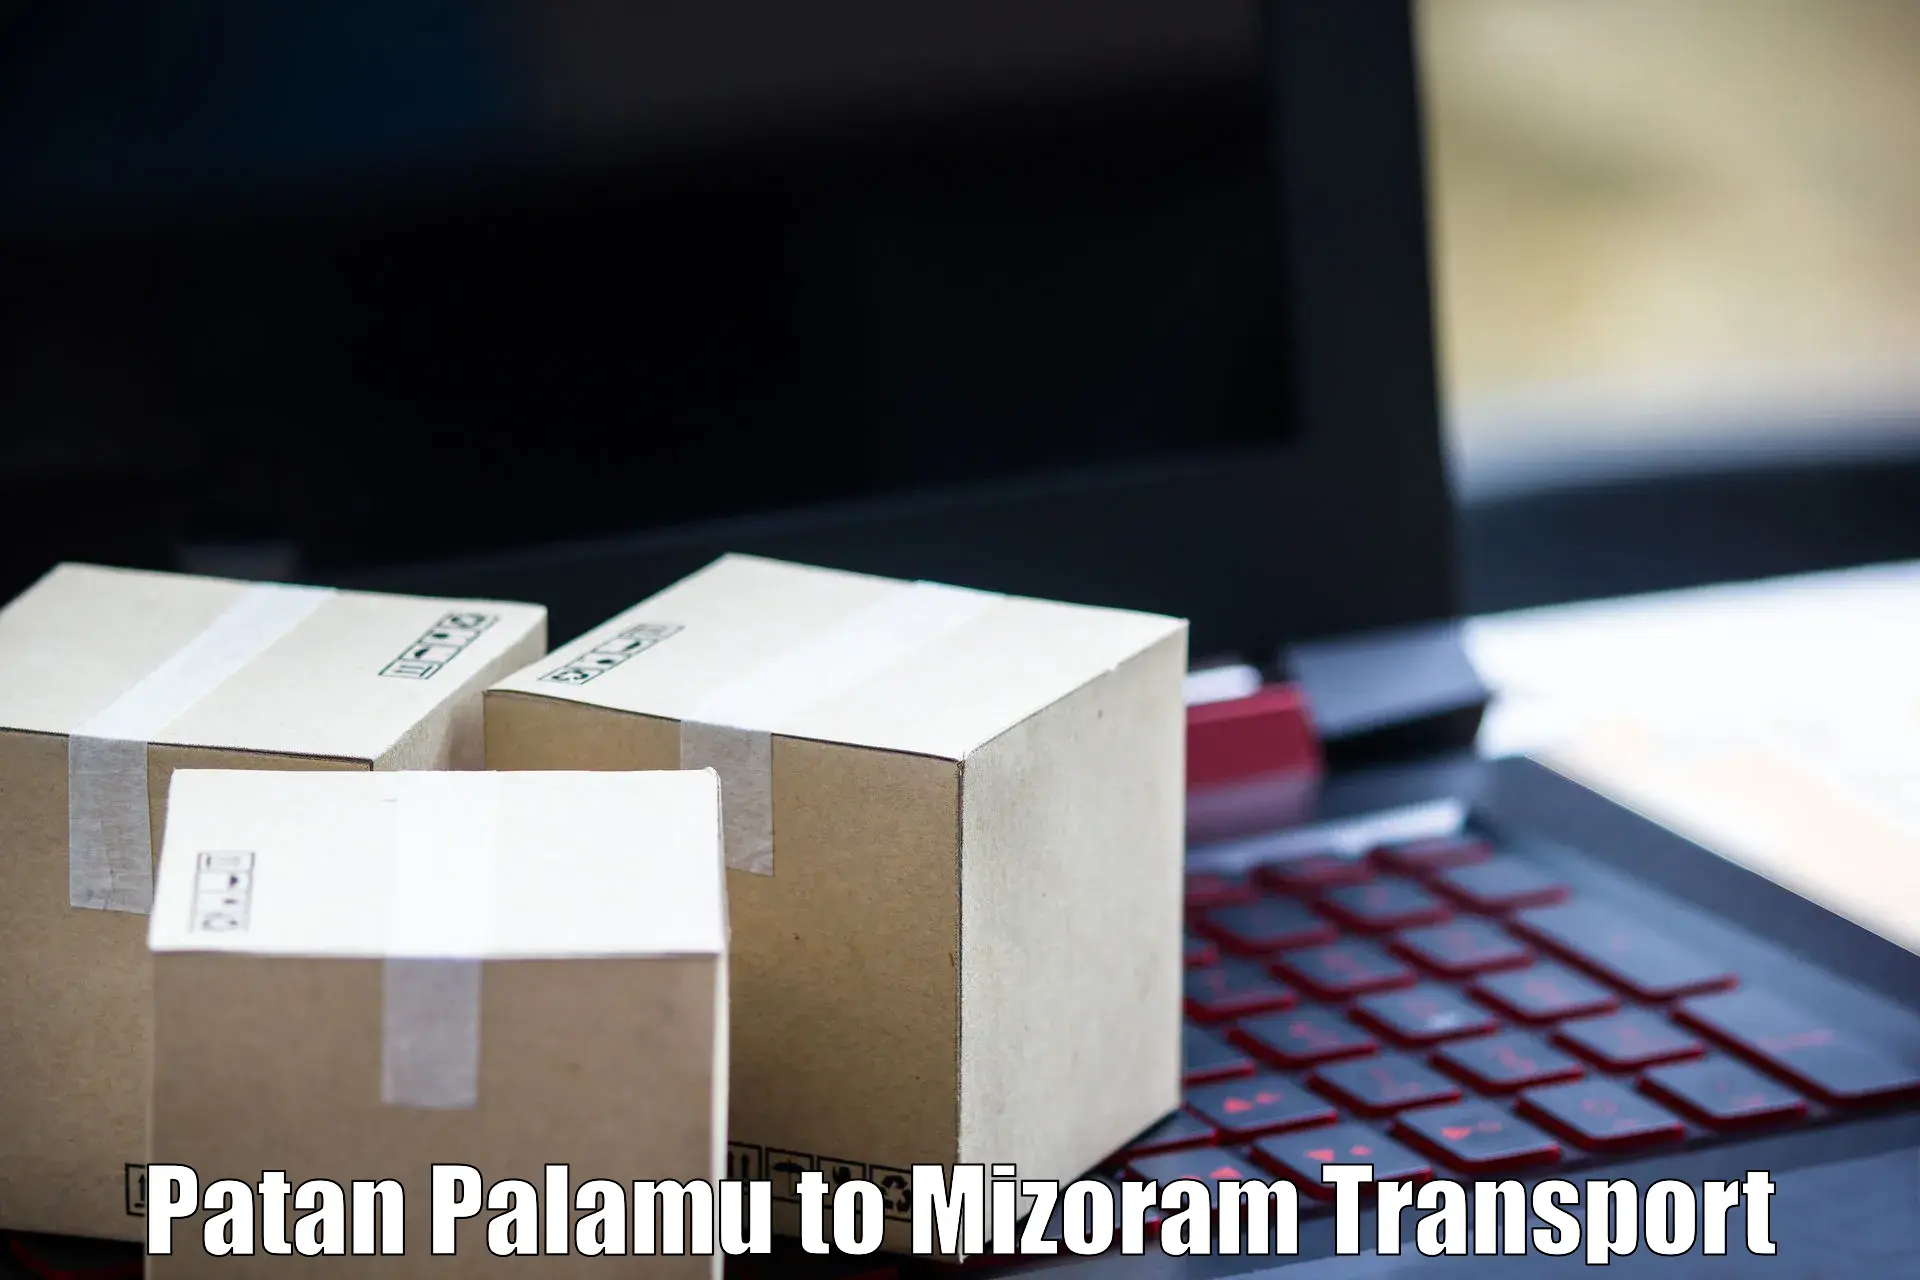 Delivery service Patan Palamu to Khawzawl